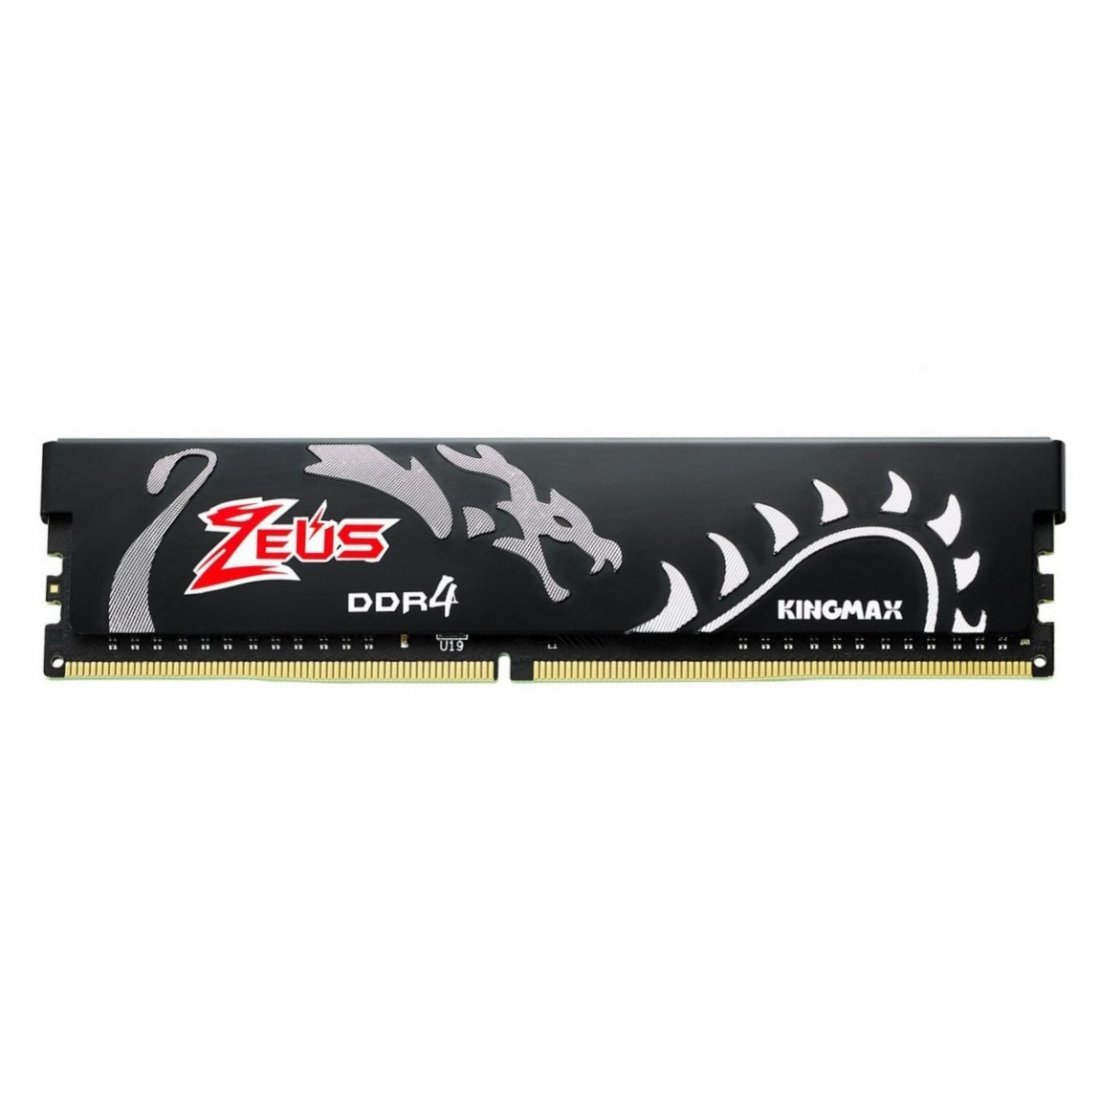 رم کامپیوتر Kingmax Zeus Dragon DDR4 16GB 3200MHz CL17 Single